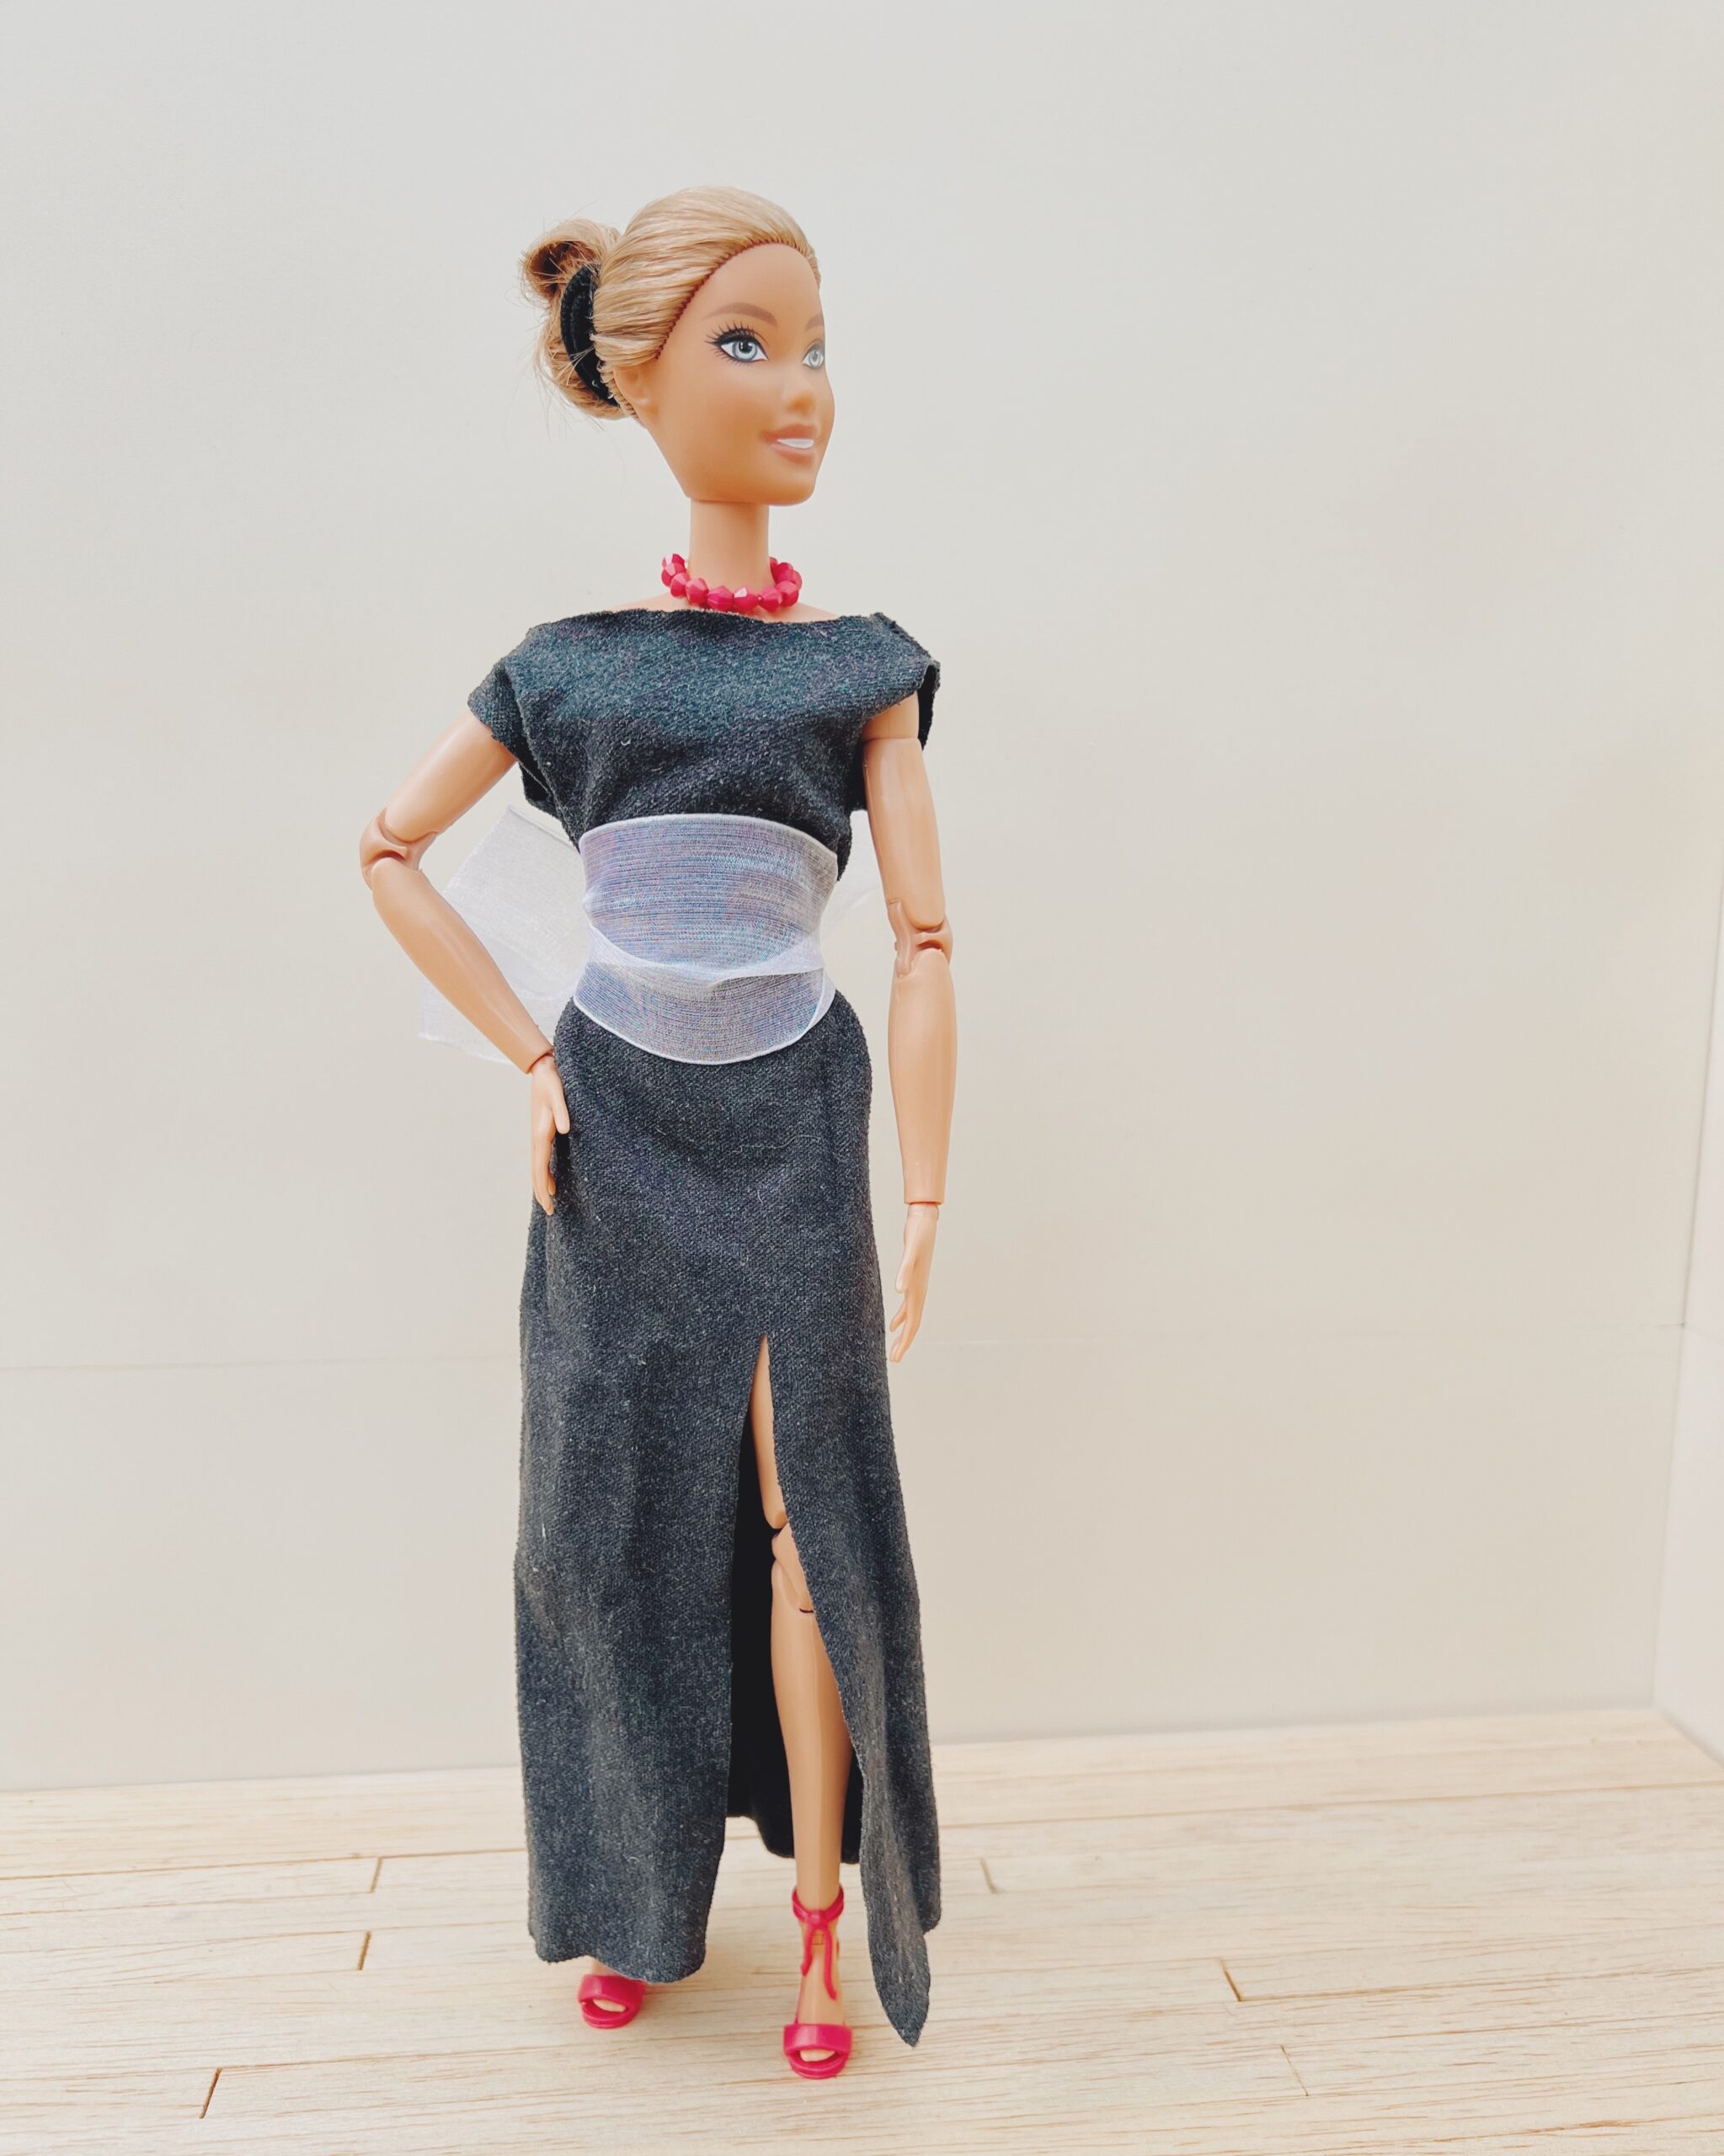 stitch barbie dolls｜TikTok Search